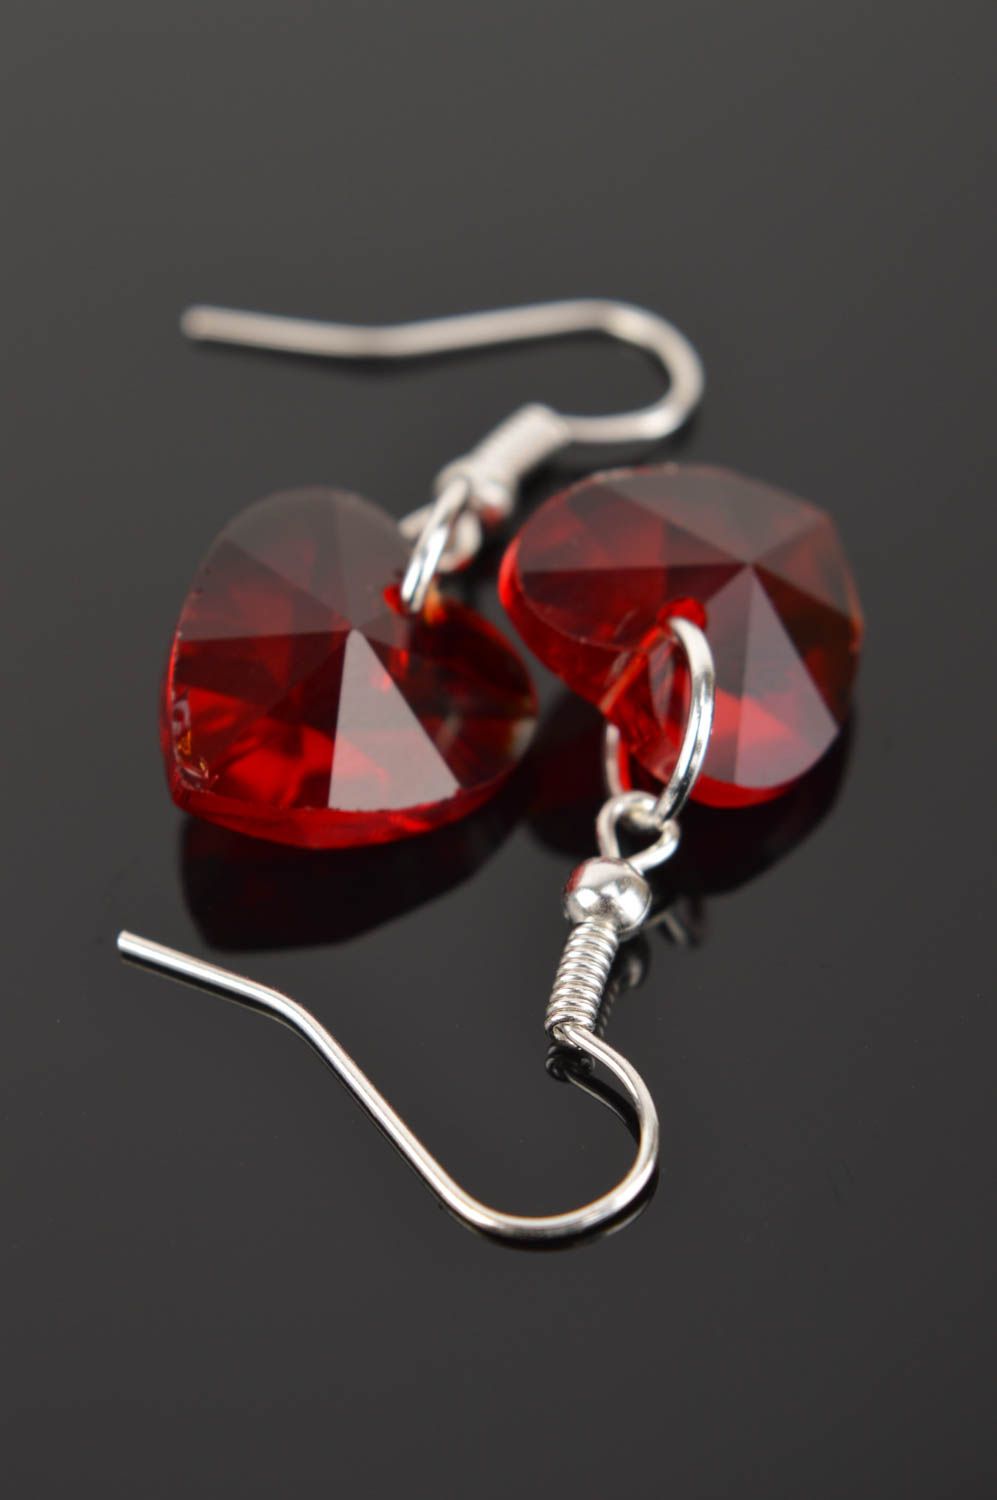 Handmade earrings designer earrings glass jewelry gift ideas unusual accessory photo 4